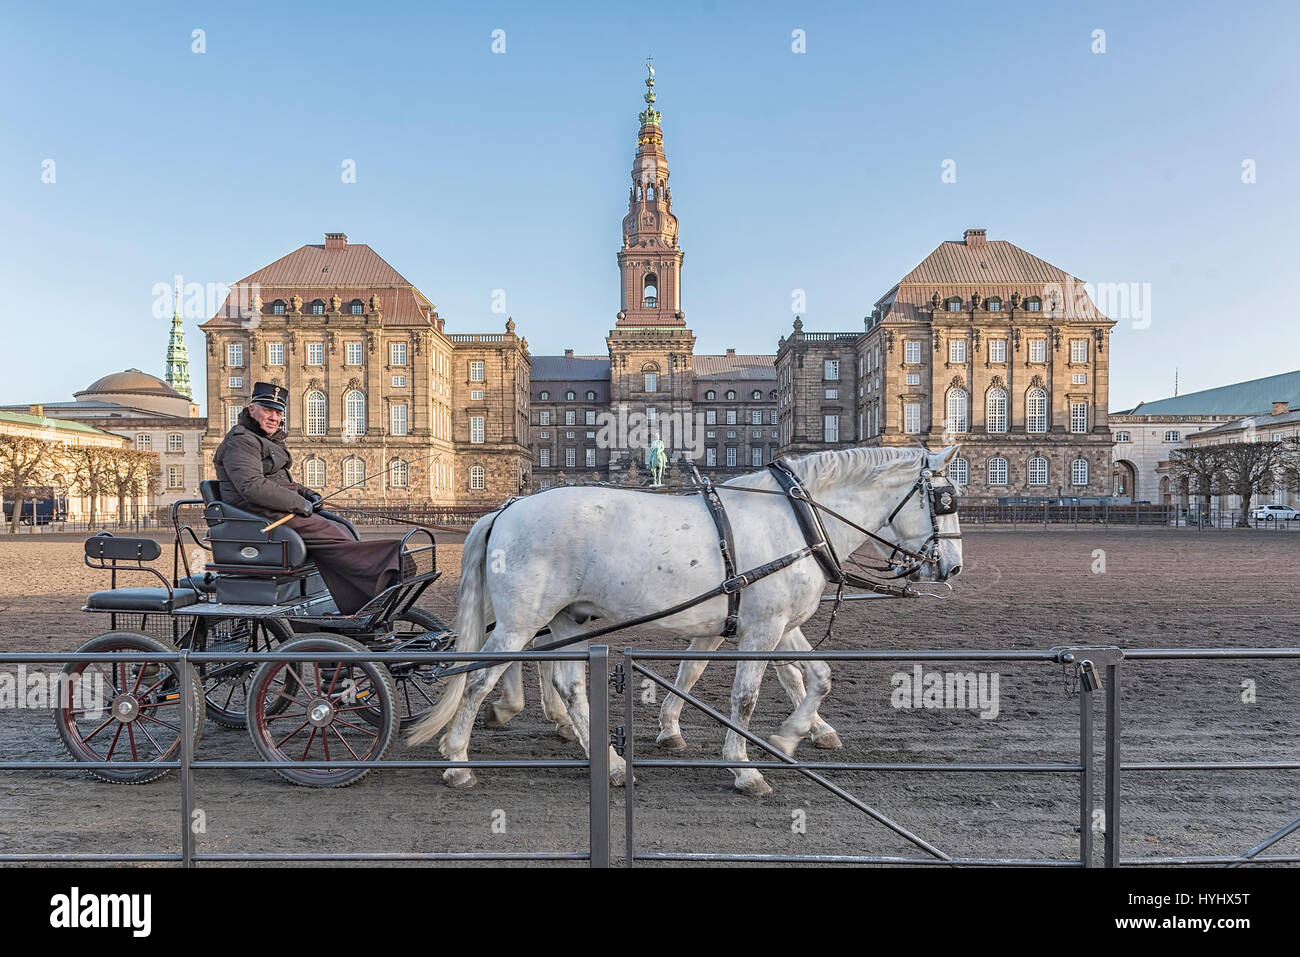 Copenhague, Dinamarca - 24 de diciembre de 2016: caballos y carros con rider en el patio del palacio Christianborg en Copenhague, Dinamarca Foto de stock